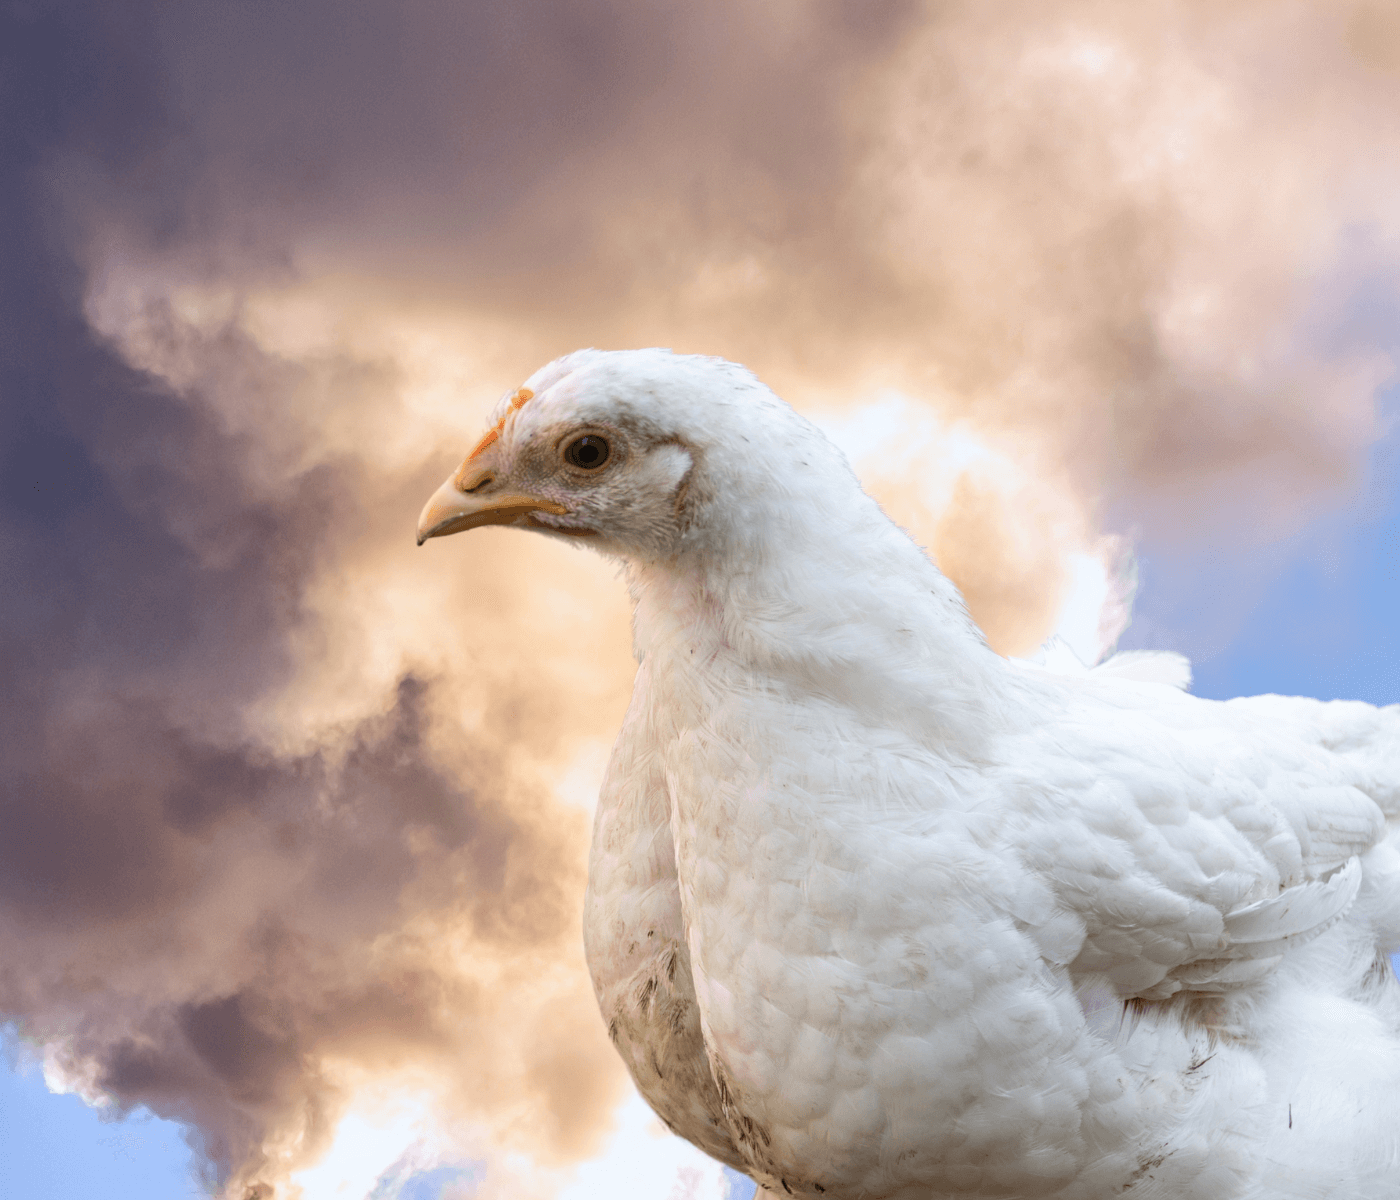 Reducción de emisiones de gases en granjas avícolas